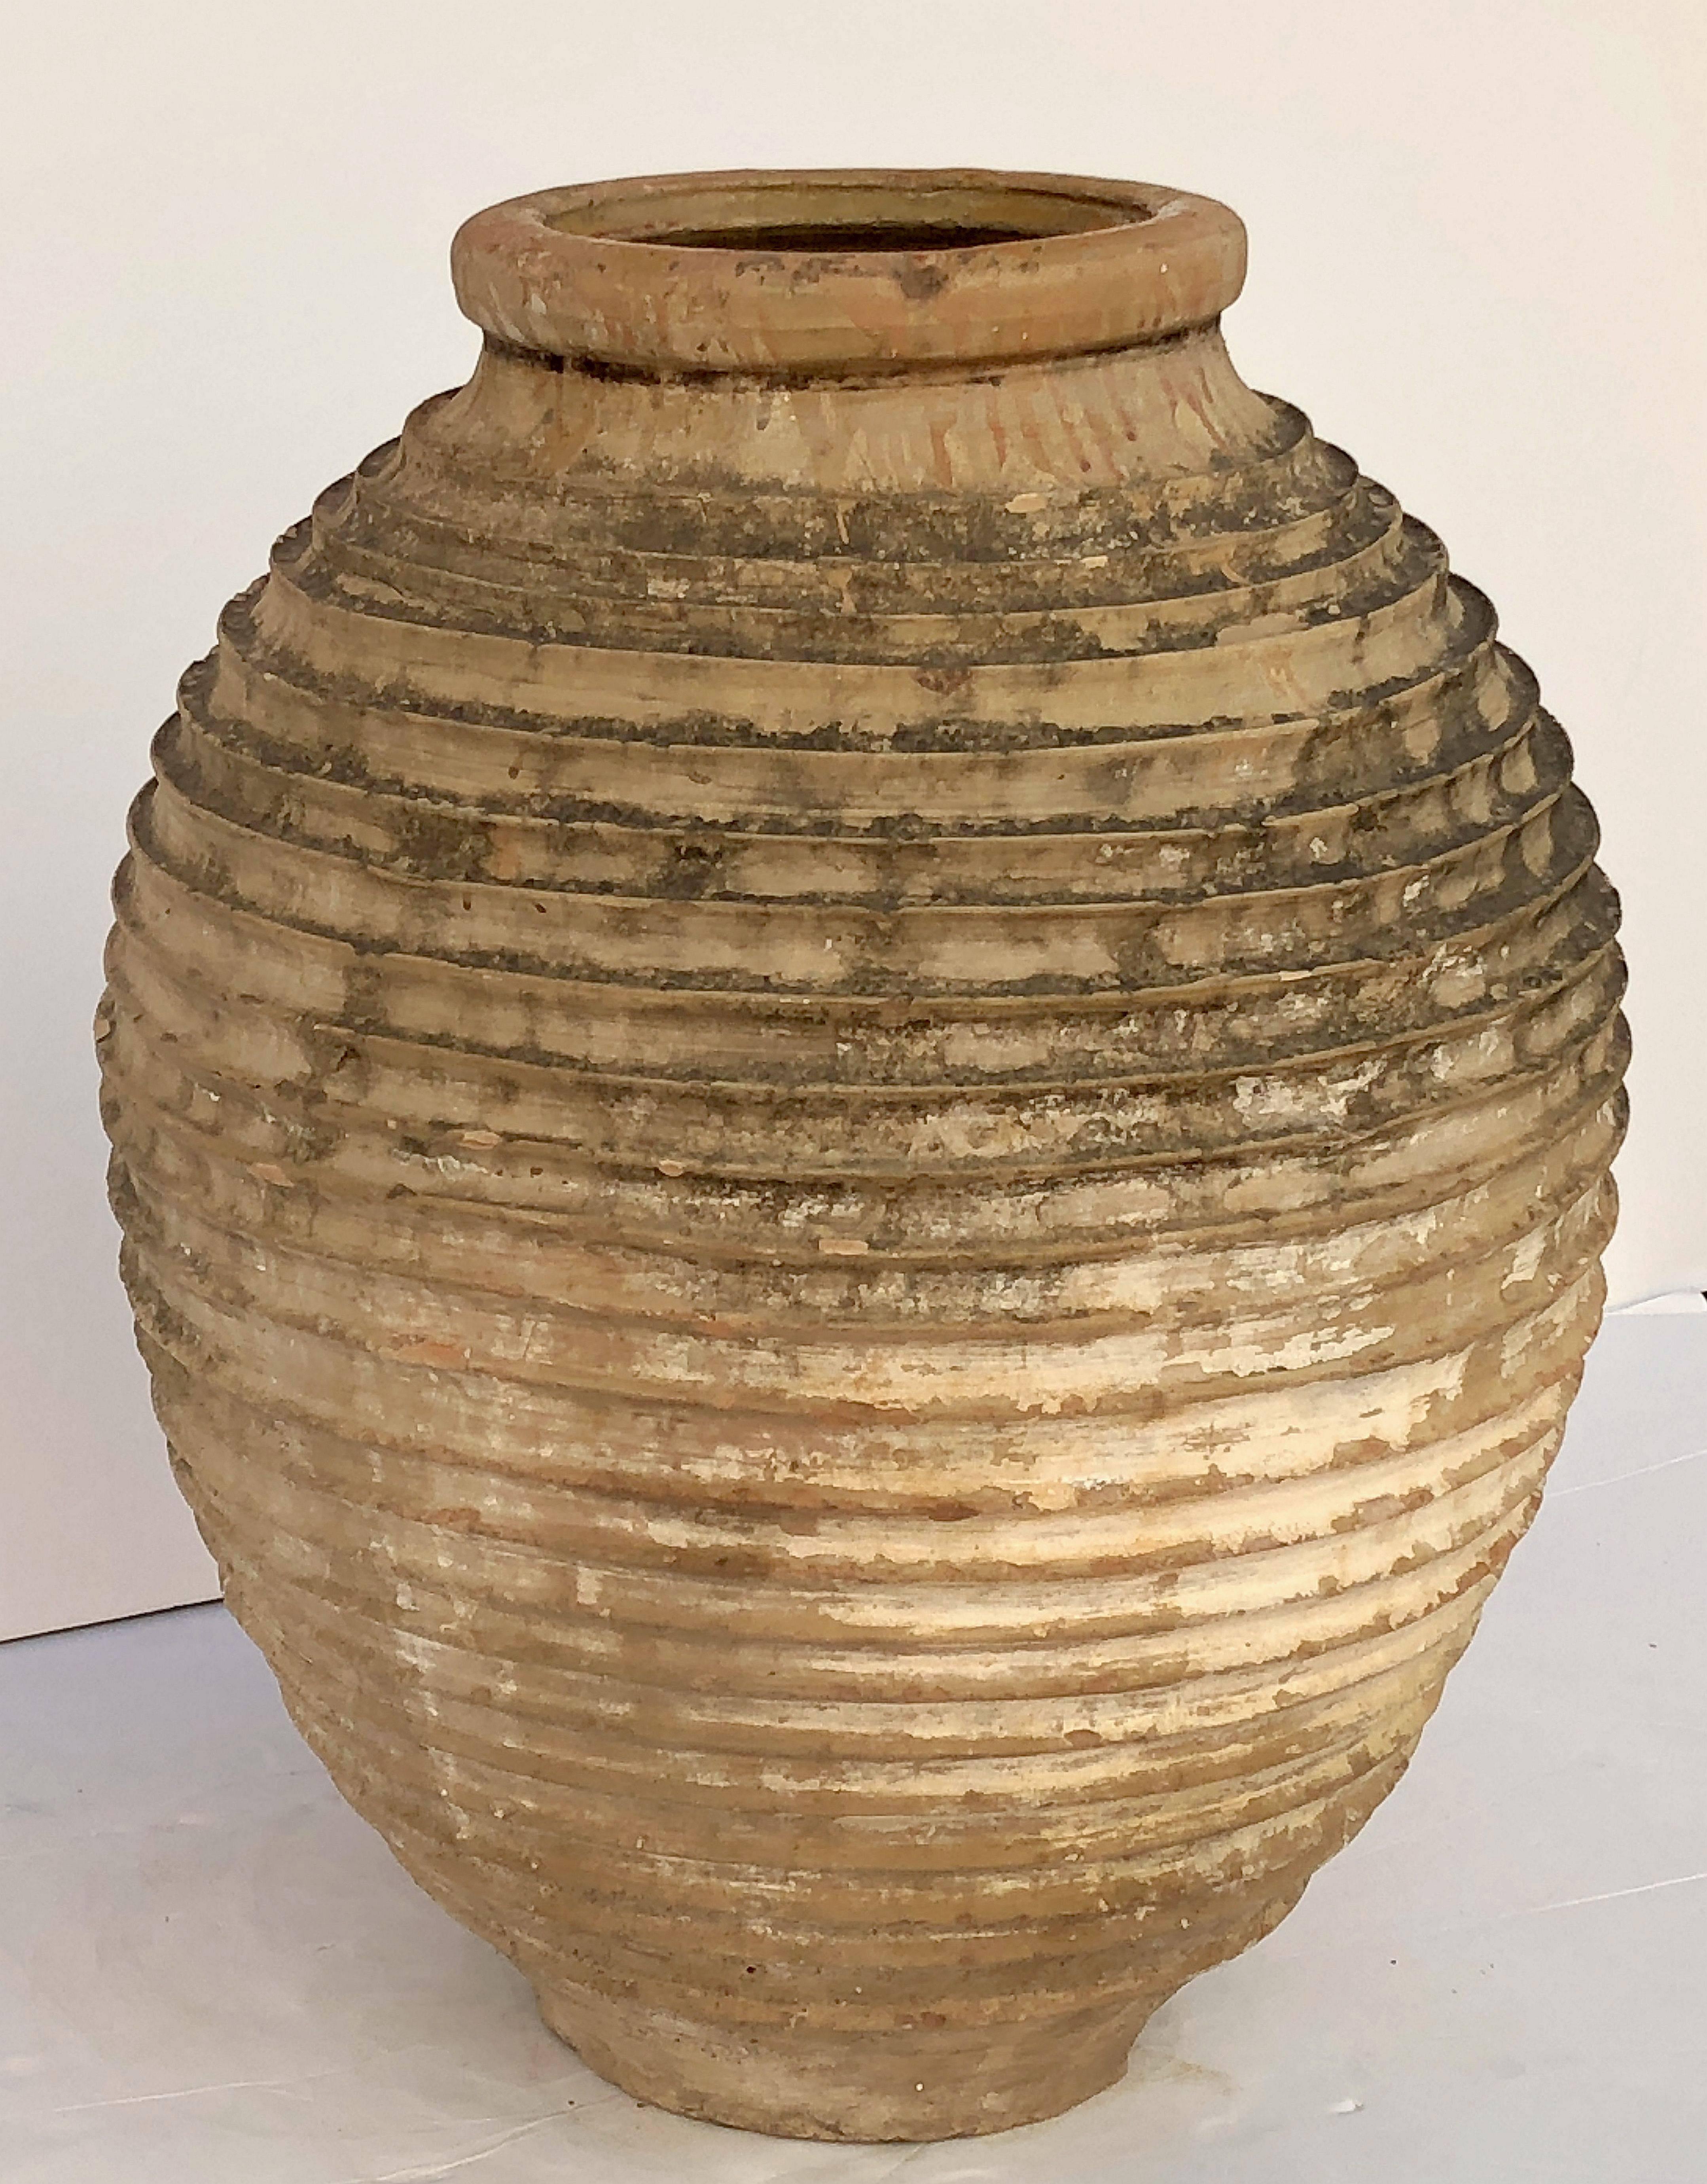 Eine schöne große griechische Garten-Urne (Amphora) oder Ölkrug, mit einer glasierten Oberseite über einem gerippten, zylindrischen Körper und funktional als Innen- oder Außengarten Ornament oder Pflanzgefäß.

Andere, ähnlich gestaltete Gläser und